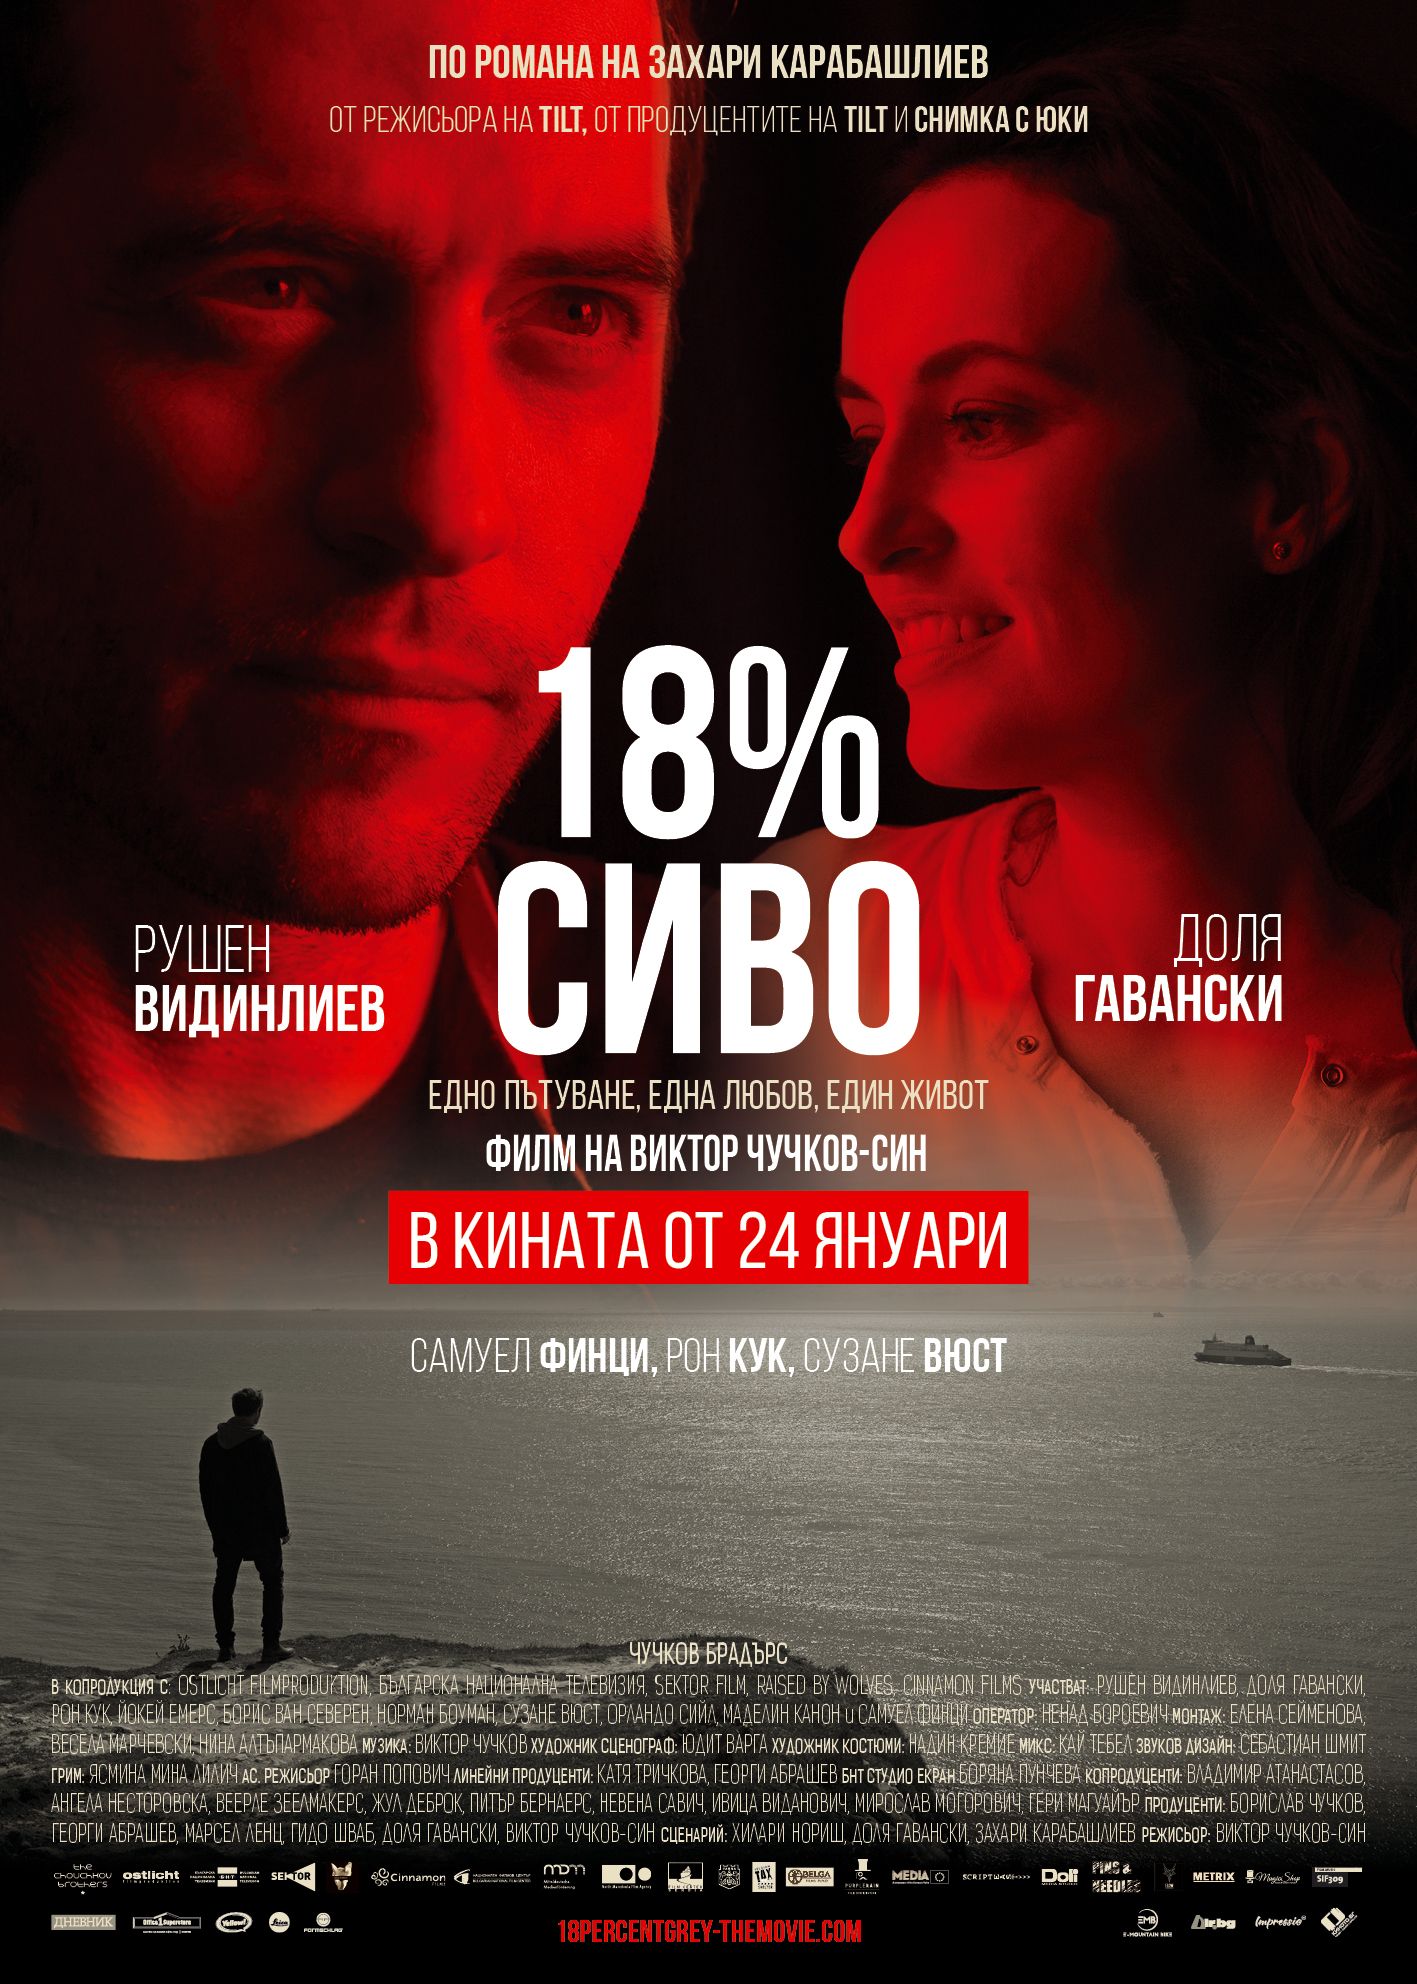 Руши Видинилиев и Доля Гавански в "18% сиво"